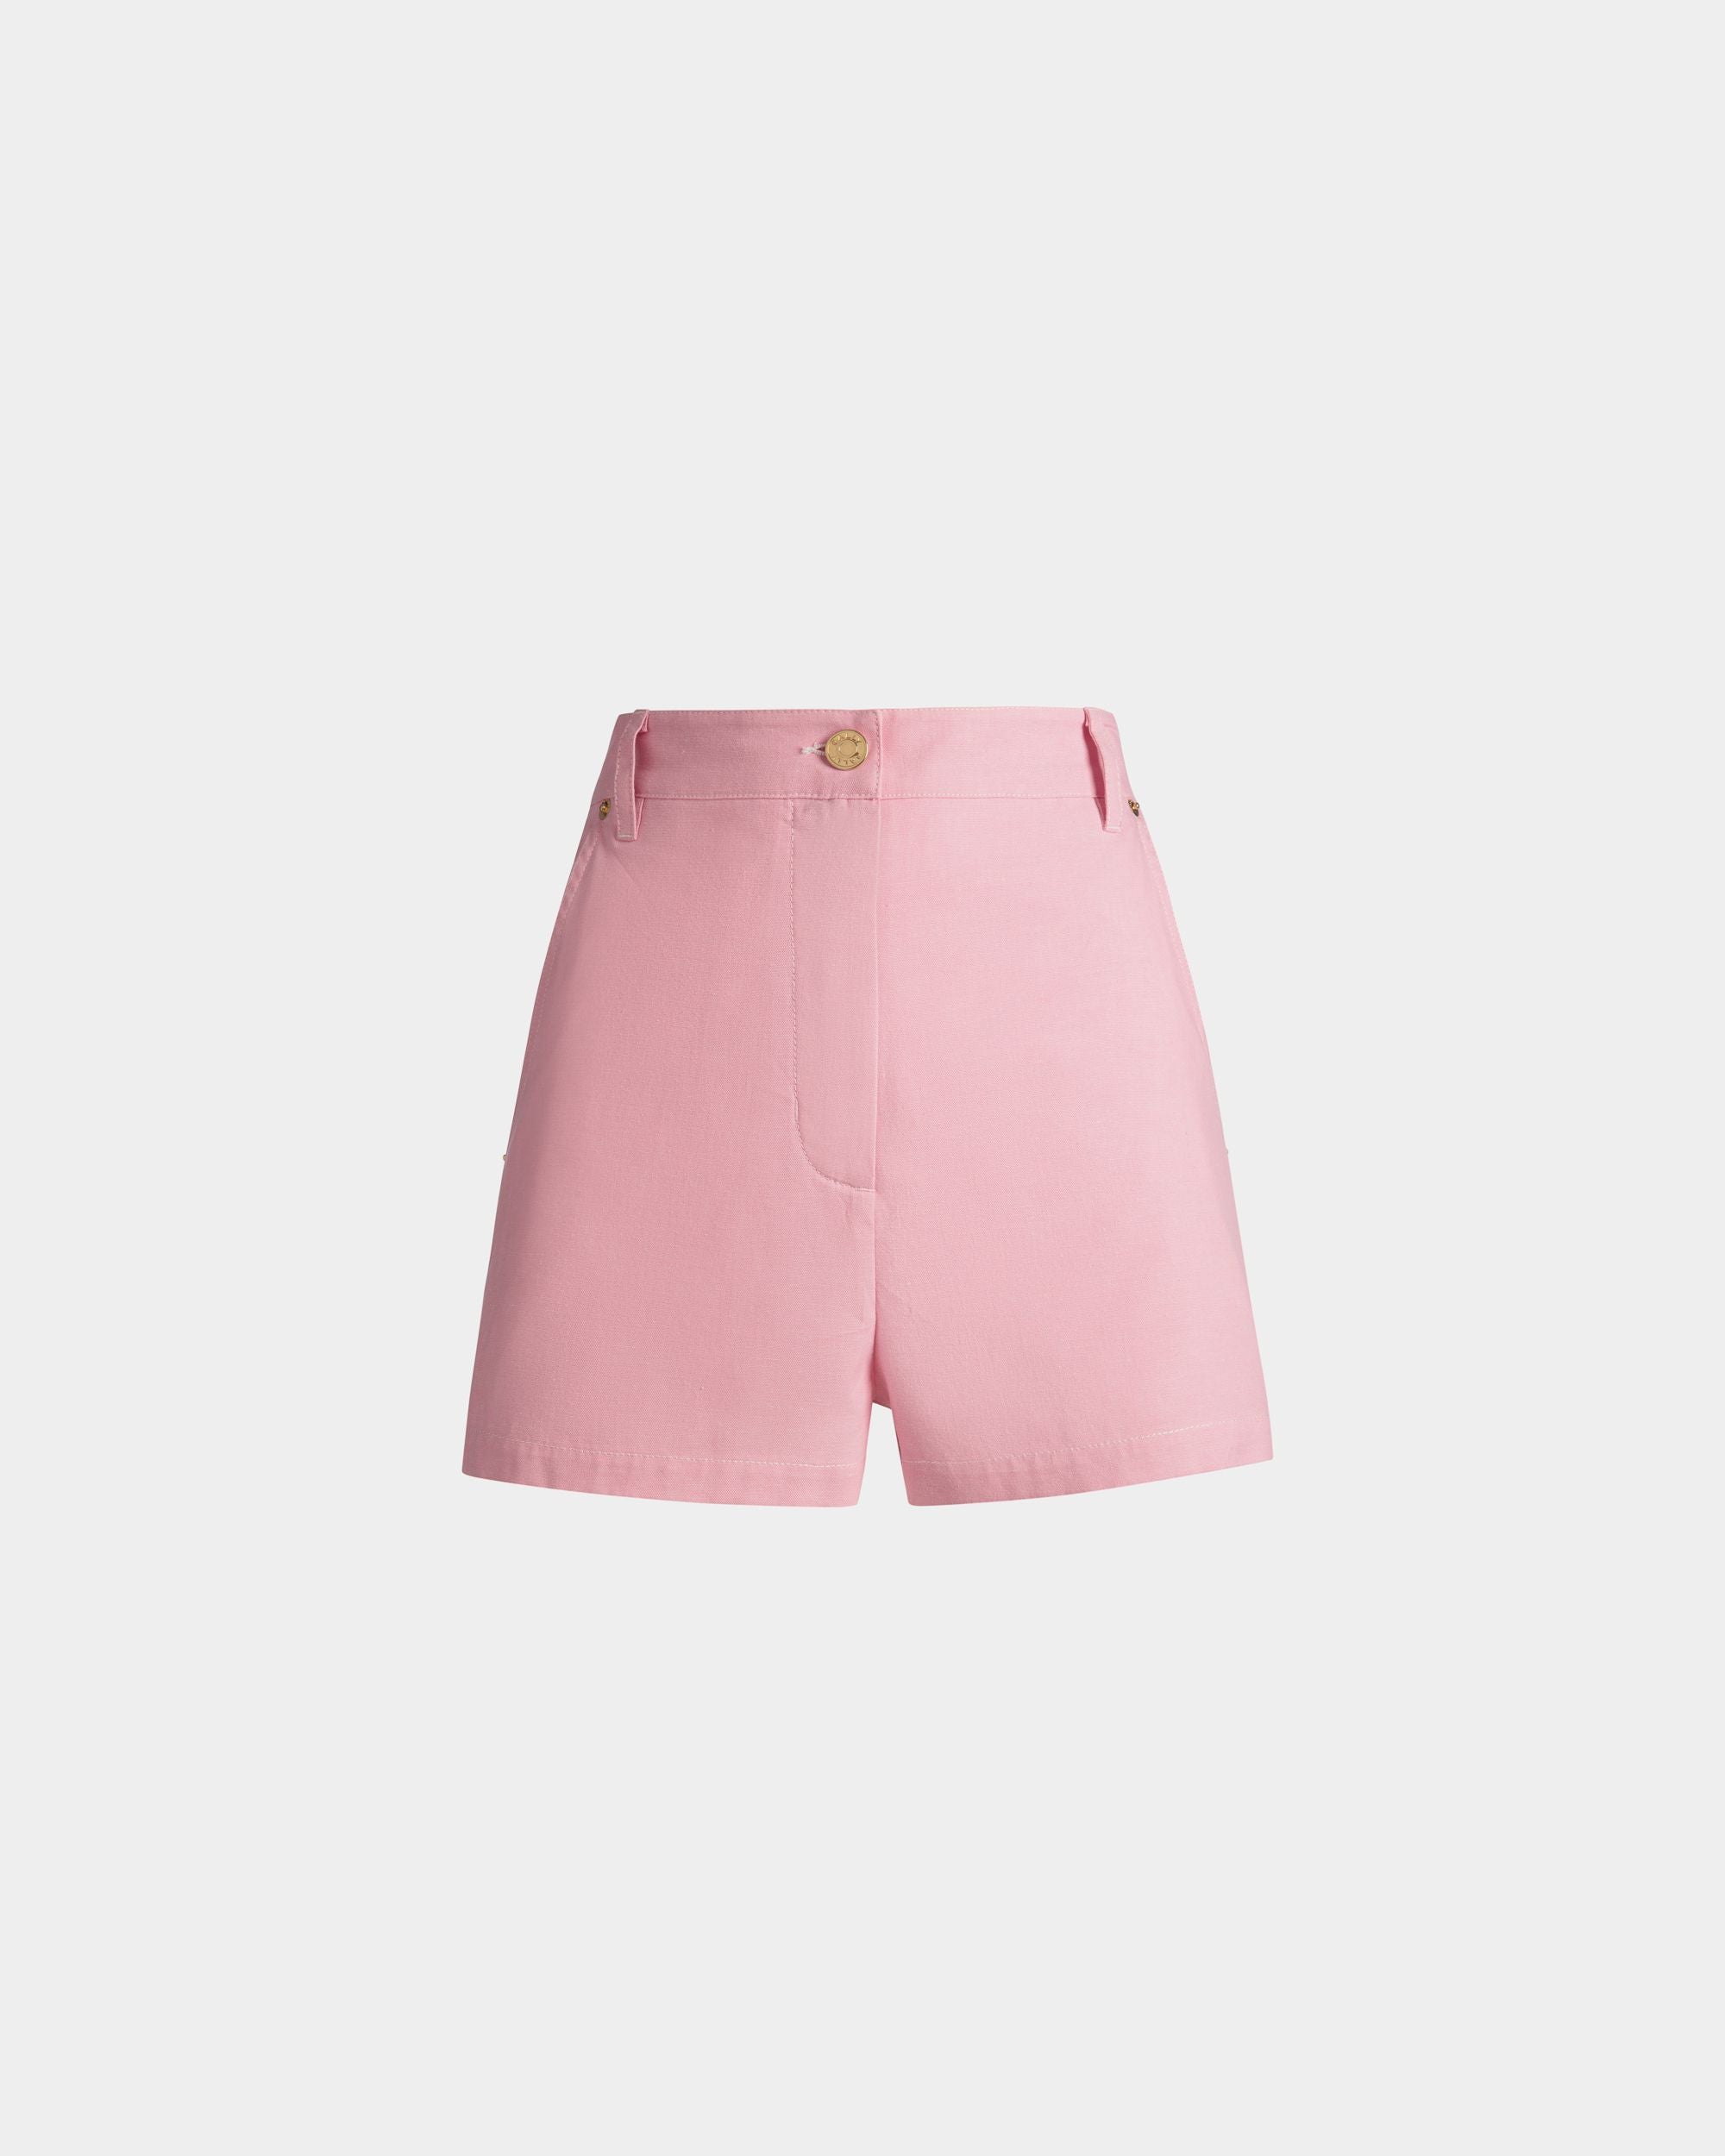 Damen-Shorts aus Baumwoll-Denim in Rosa | Bally | Still Life Vorderseite